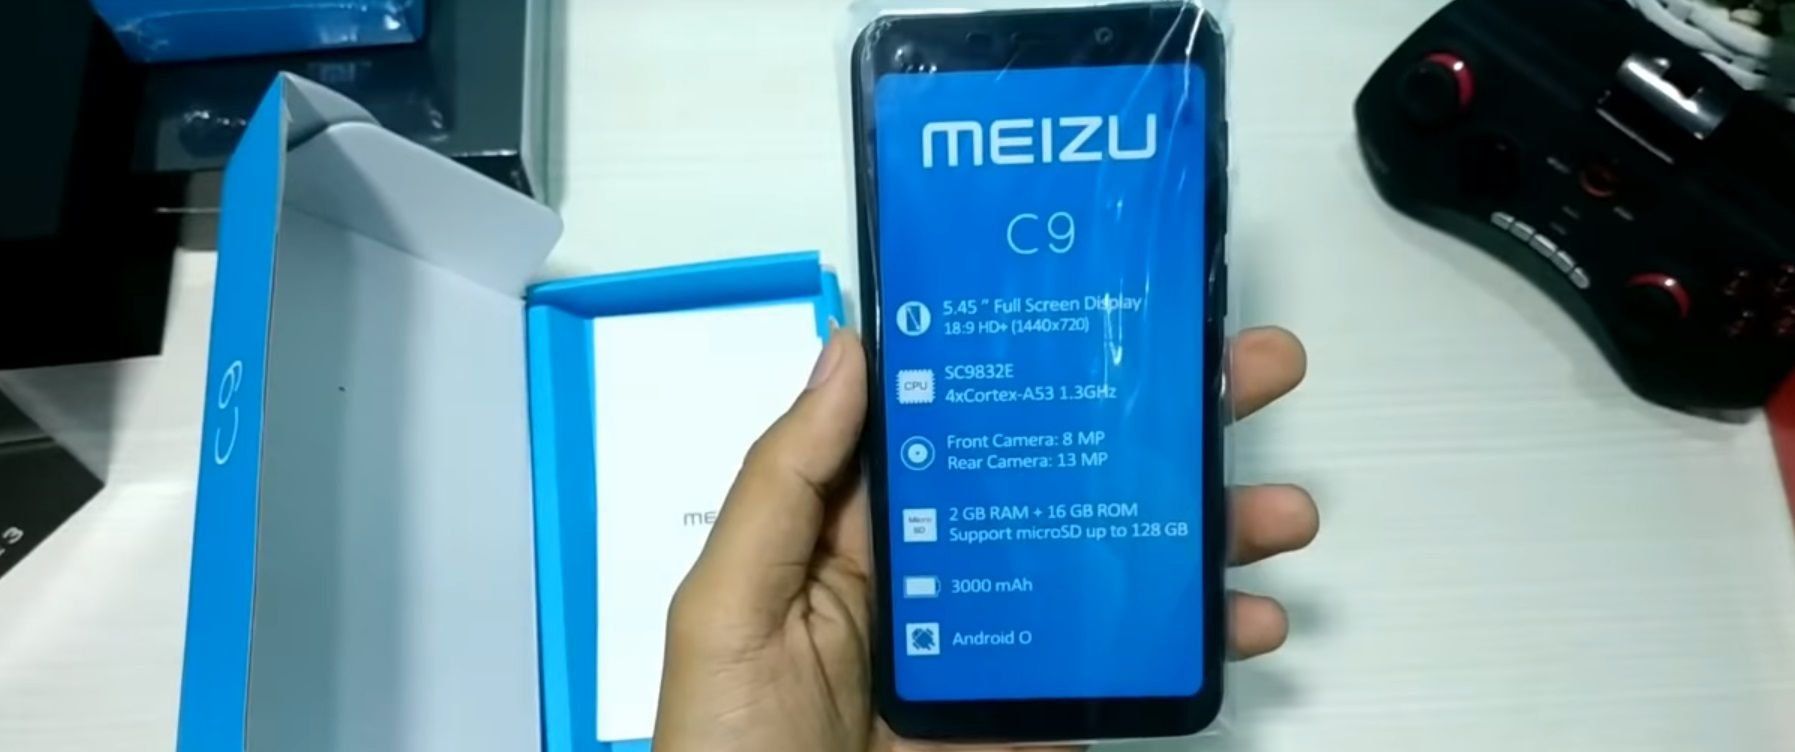 Meizu C9 at C9 Pro smartphone - mga pakinabang at kawalan